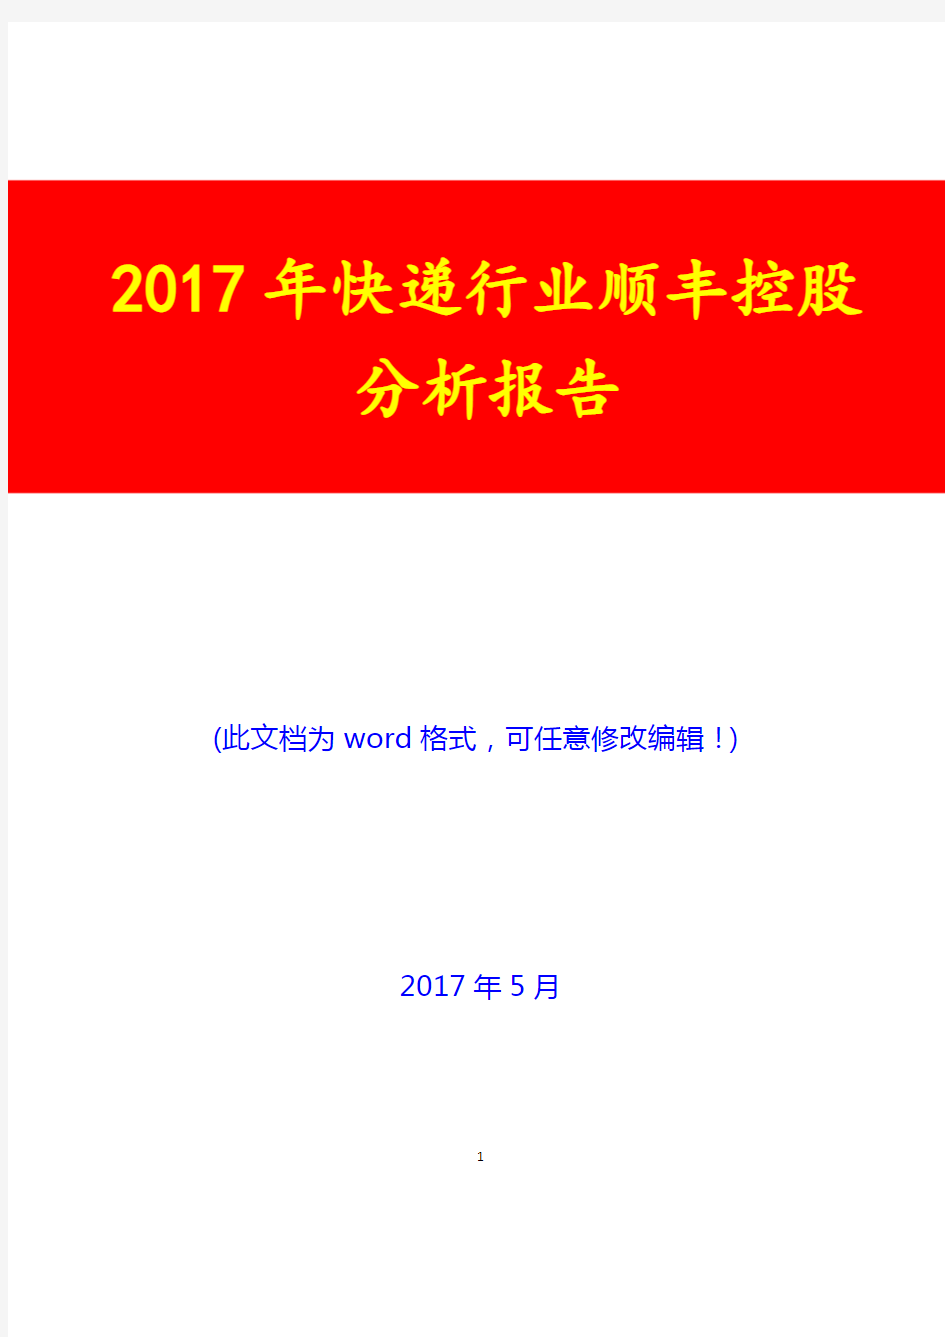 2017年快递行业顺丰控股分析报告